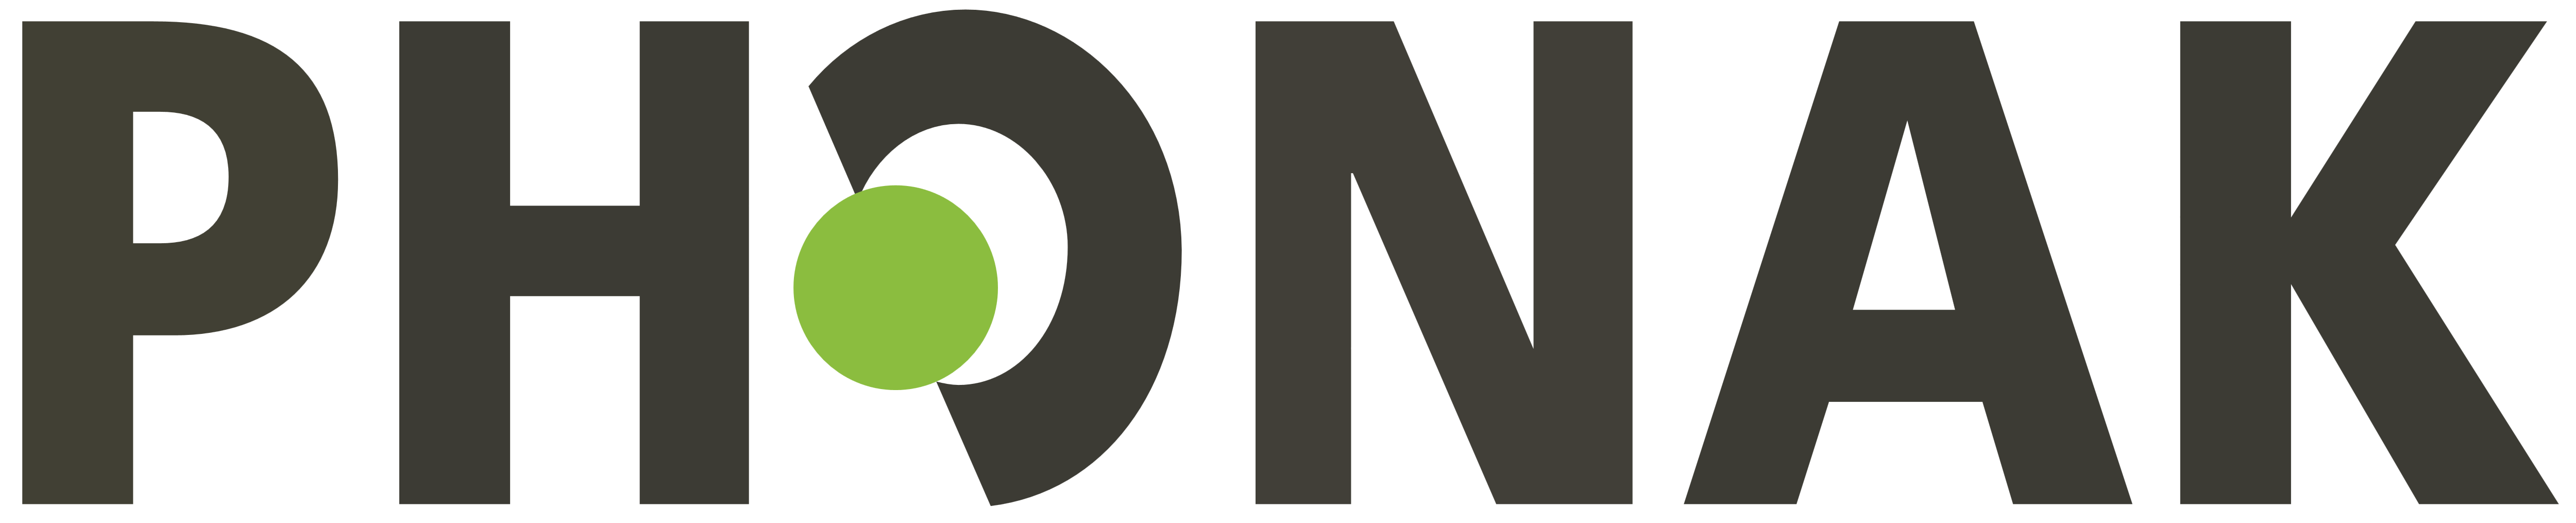 Phonak – Logos Download